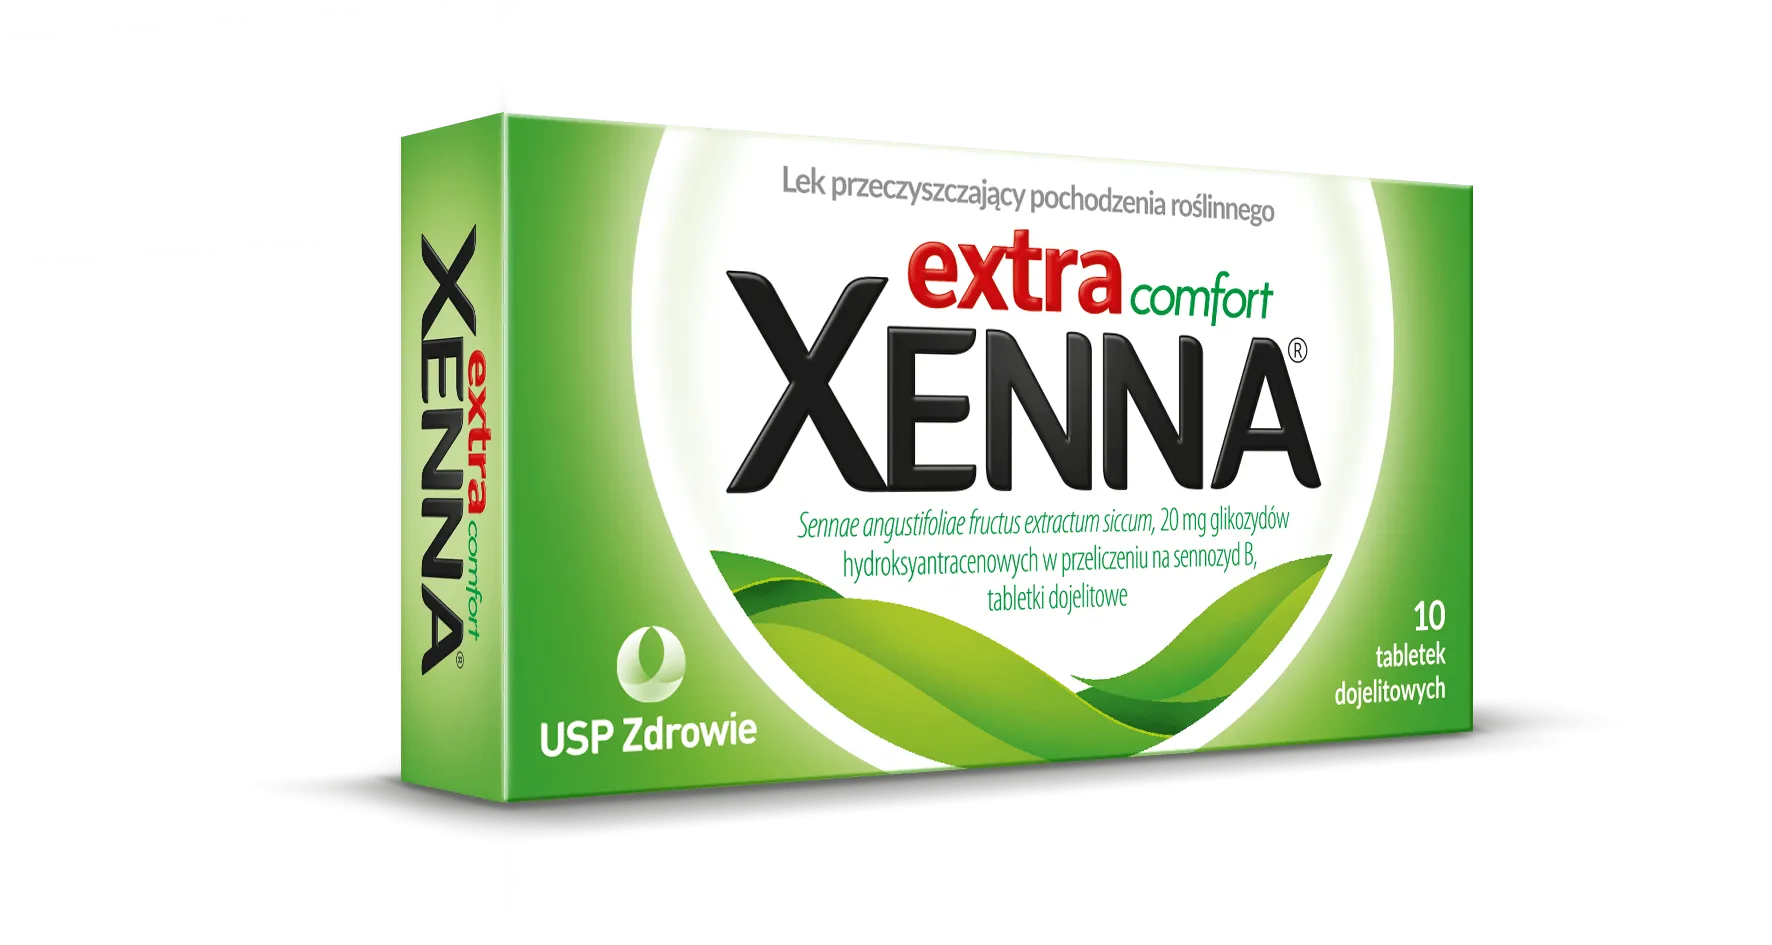 Xenna Extra Comfort, lek przeczyszczający pochodzenia roślinnego, 10 tabletek dojelitowych